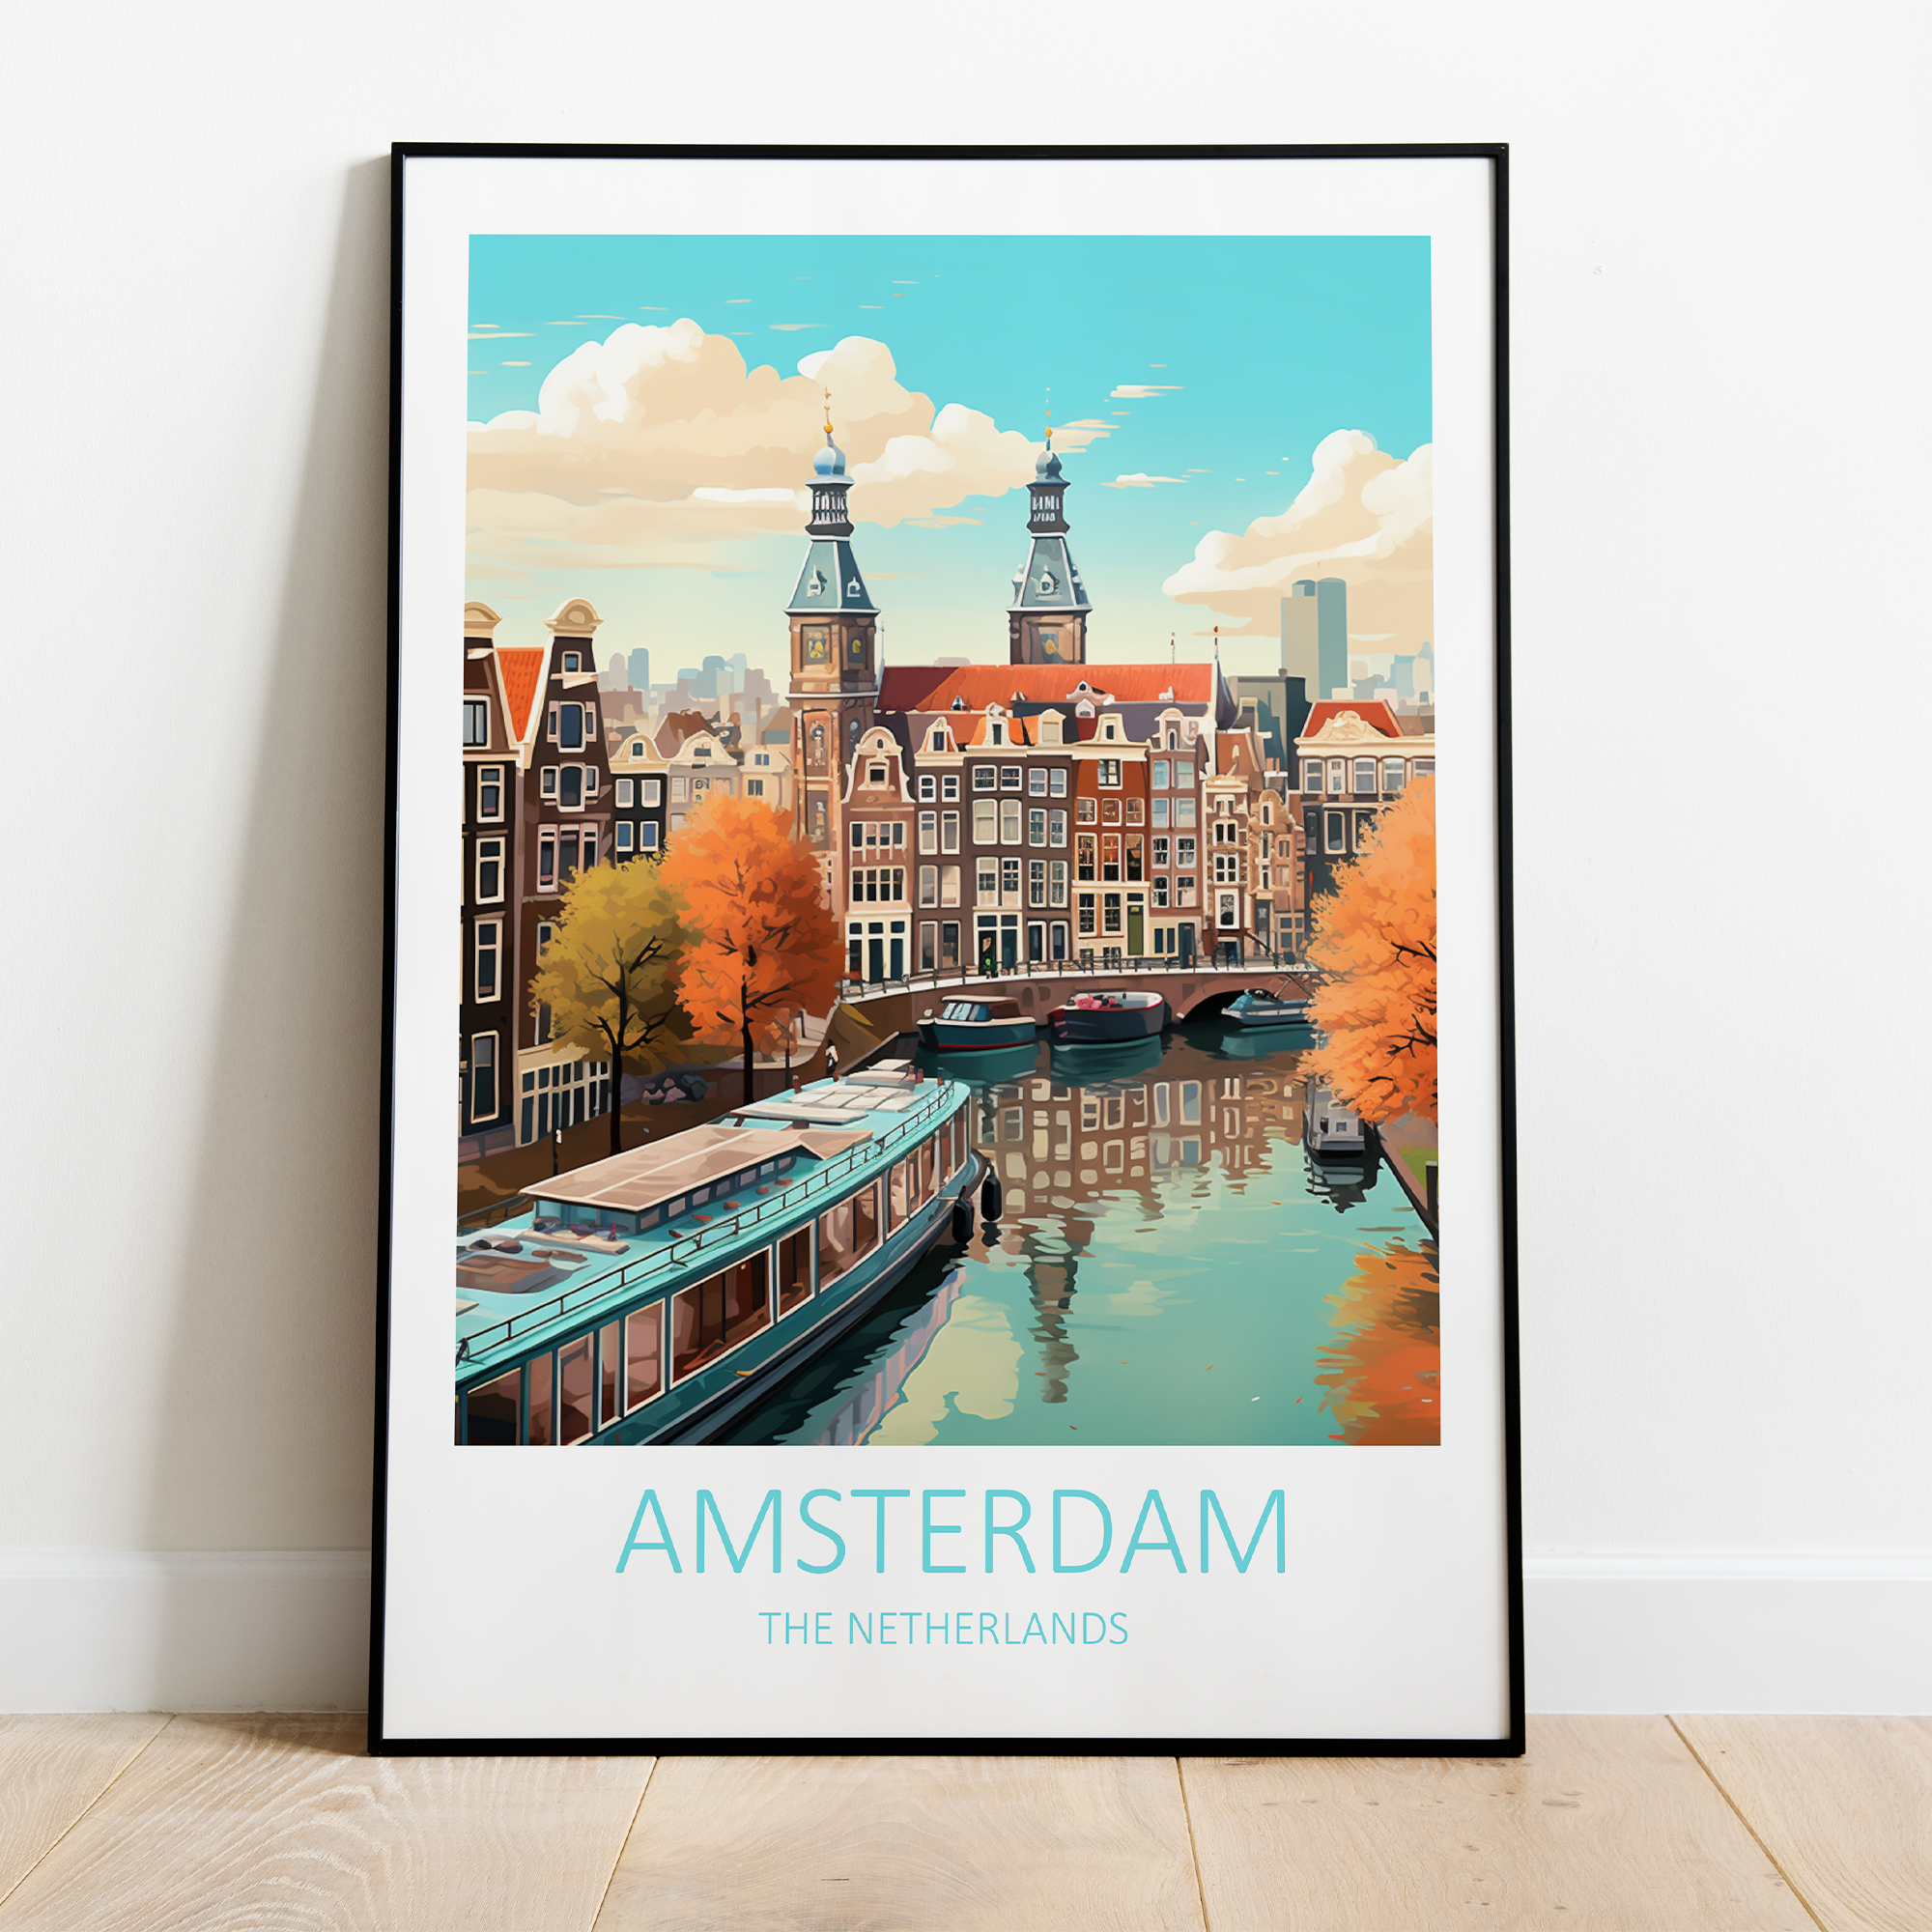 Billede af Amsterdam i Holland - plakat 2